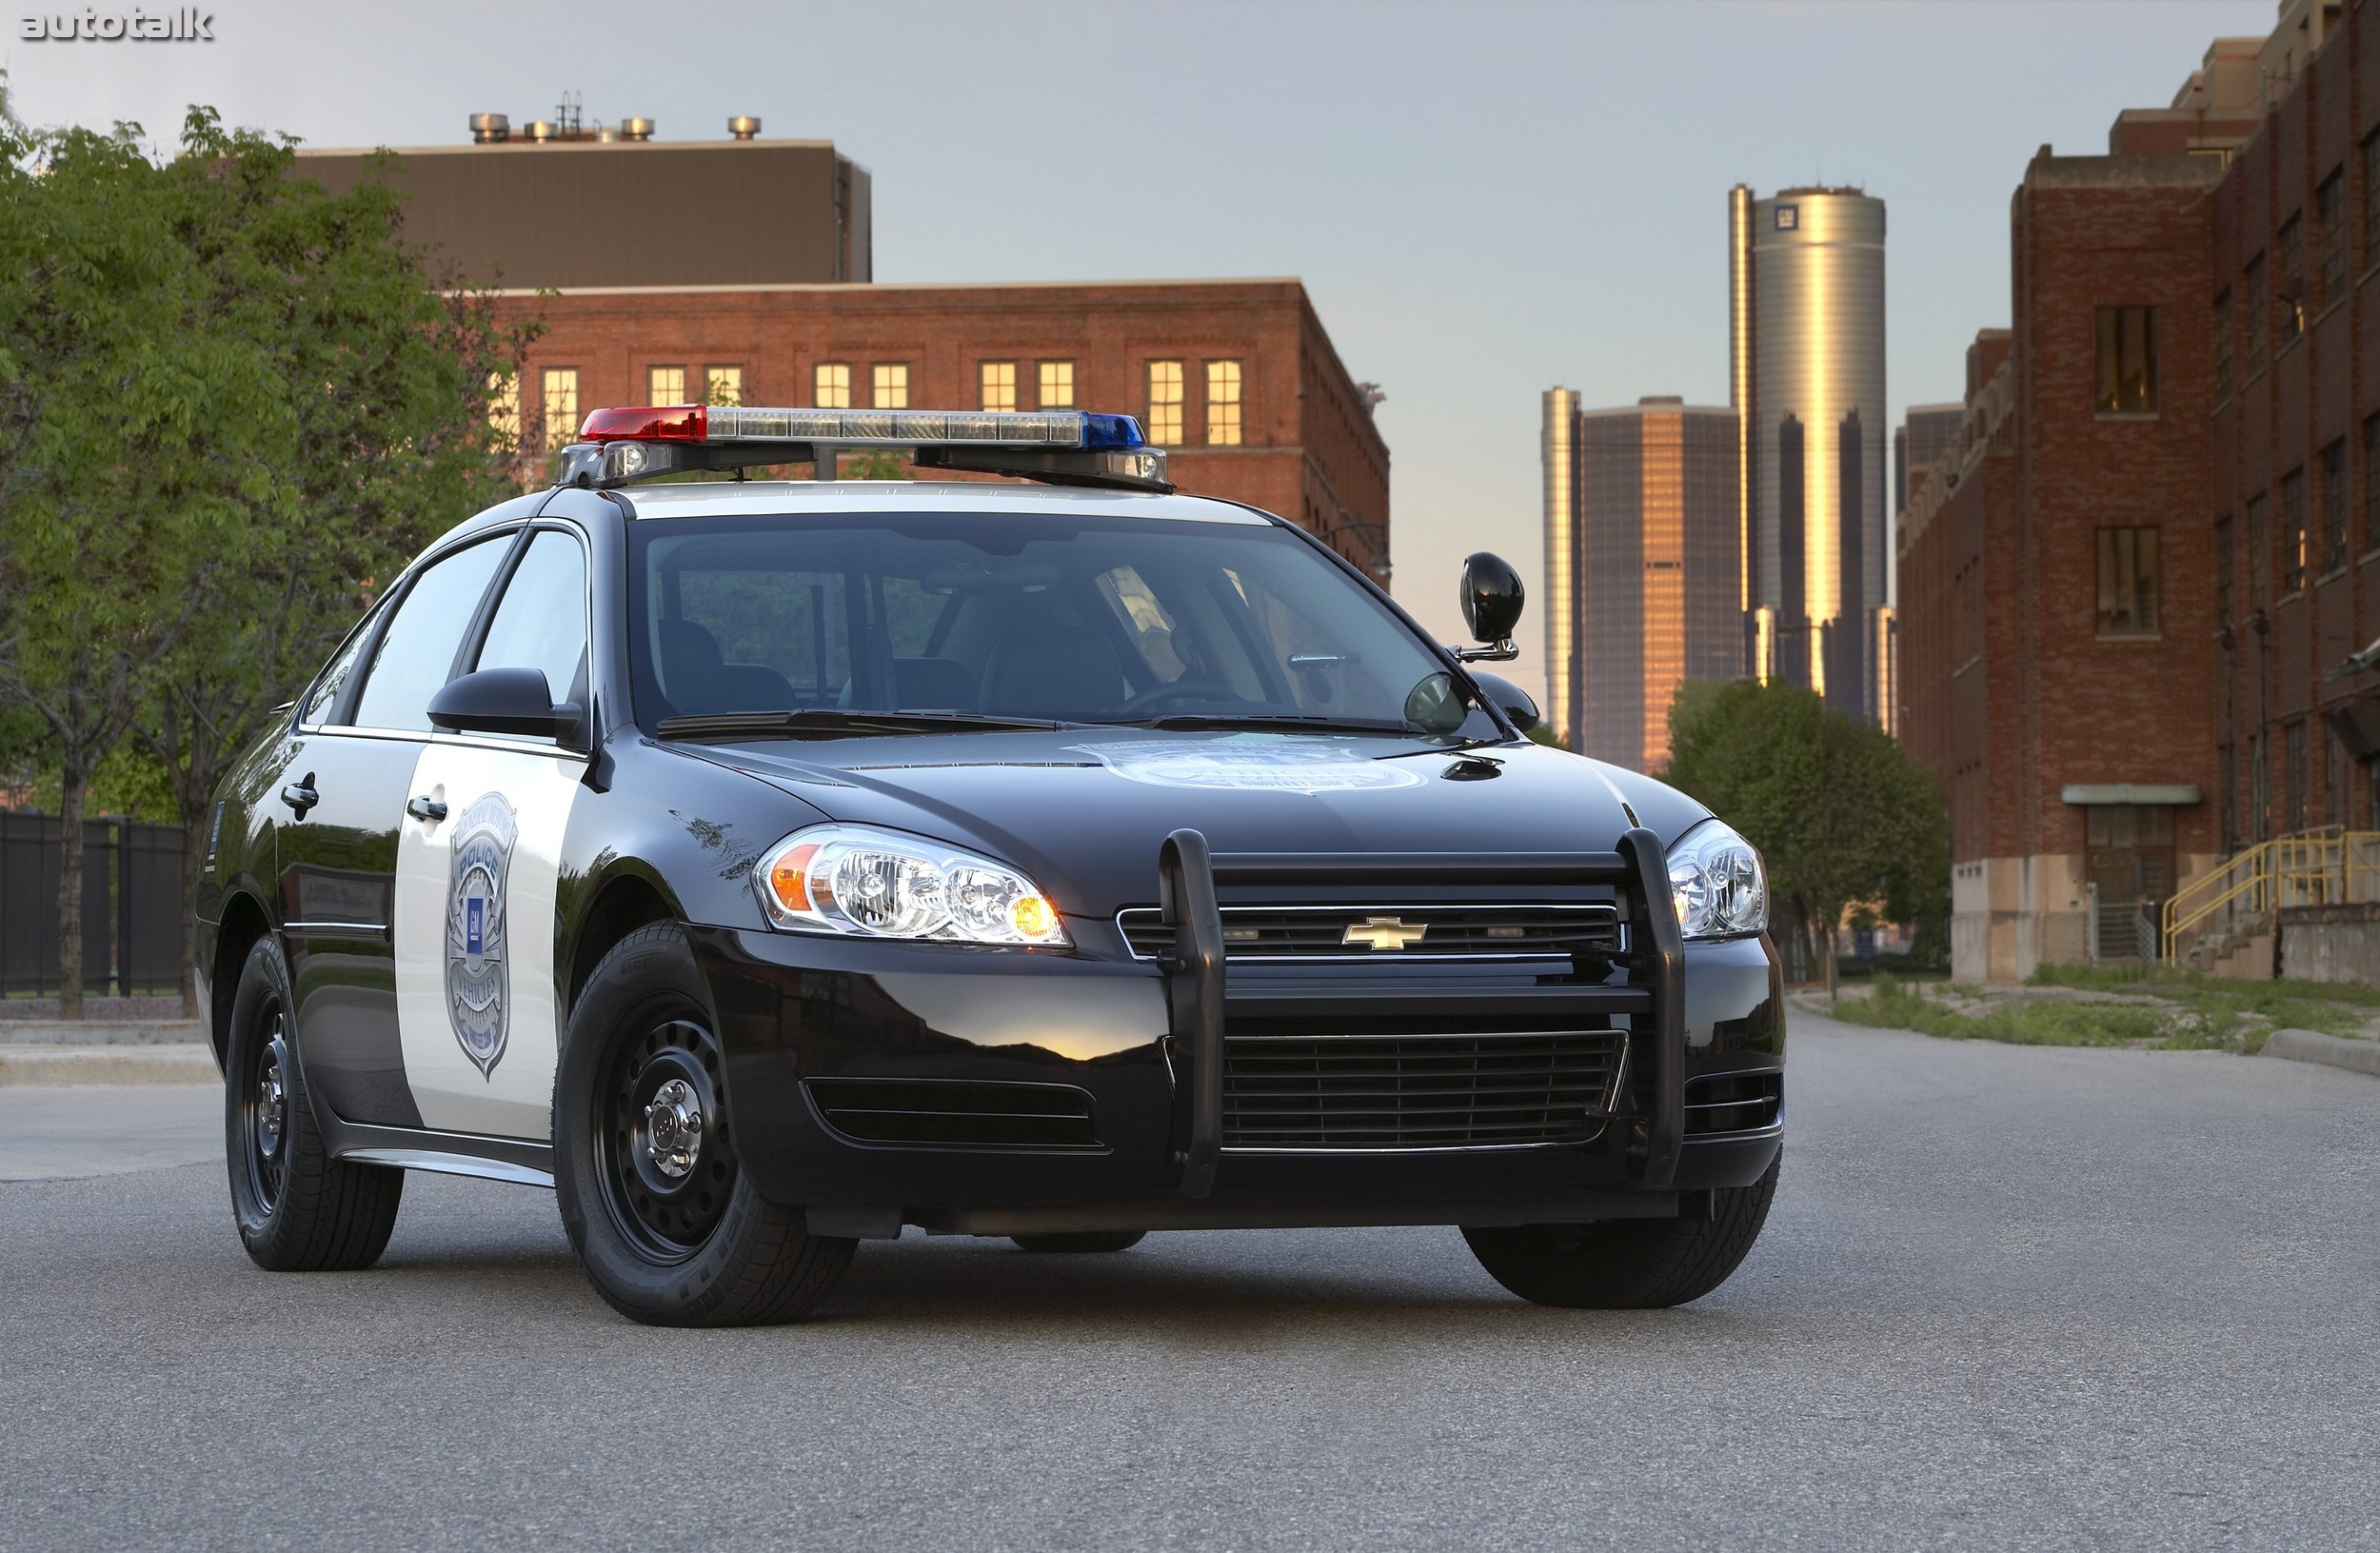 Марки полицейских машин. Chevrolet Caprice 2006 Police. Американские полицейские машины Шевроле. Полицейский Додж Чарджер. Chevrolet Impala 2019 Police.